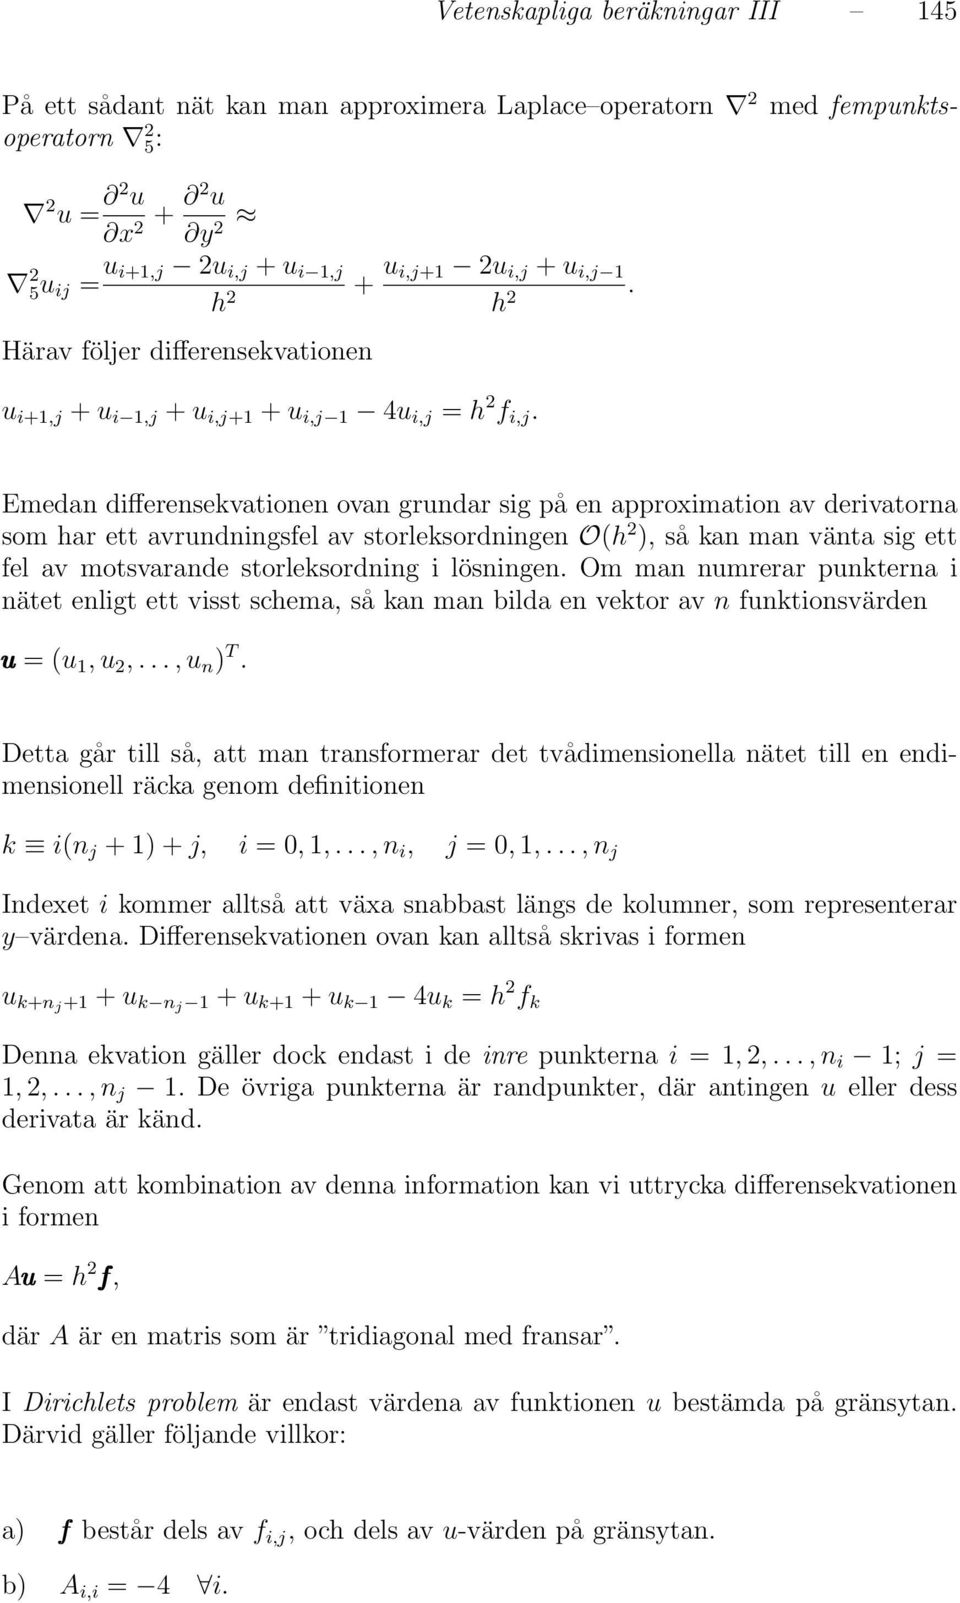 Emedan differensekvationen ovan grundar sig på en approximation av derivatorna som har ett avrundningsfel av storleksordningen O(h 2 ), så kan man vänta sig ett fel av motsvarande storleksordning i